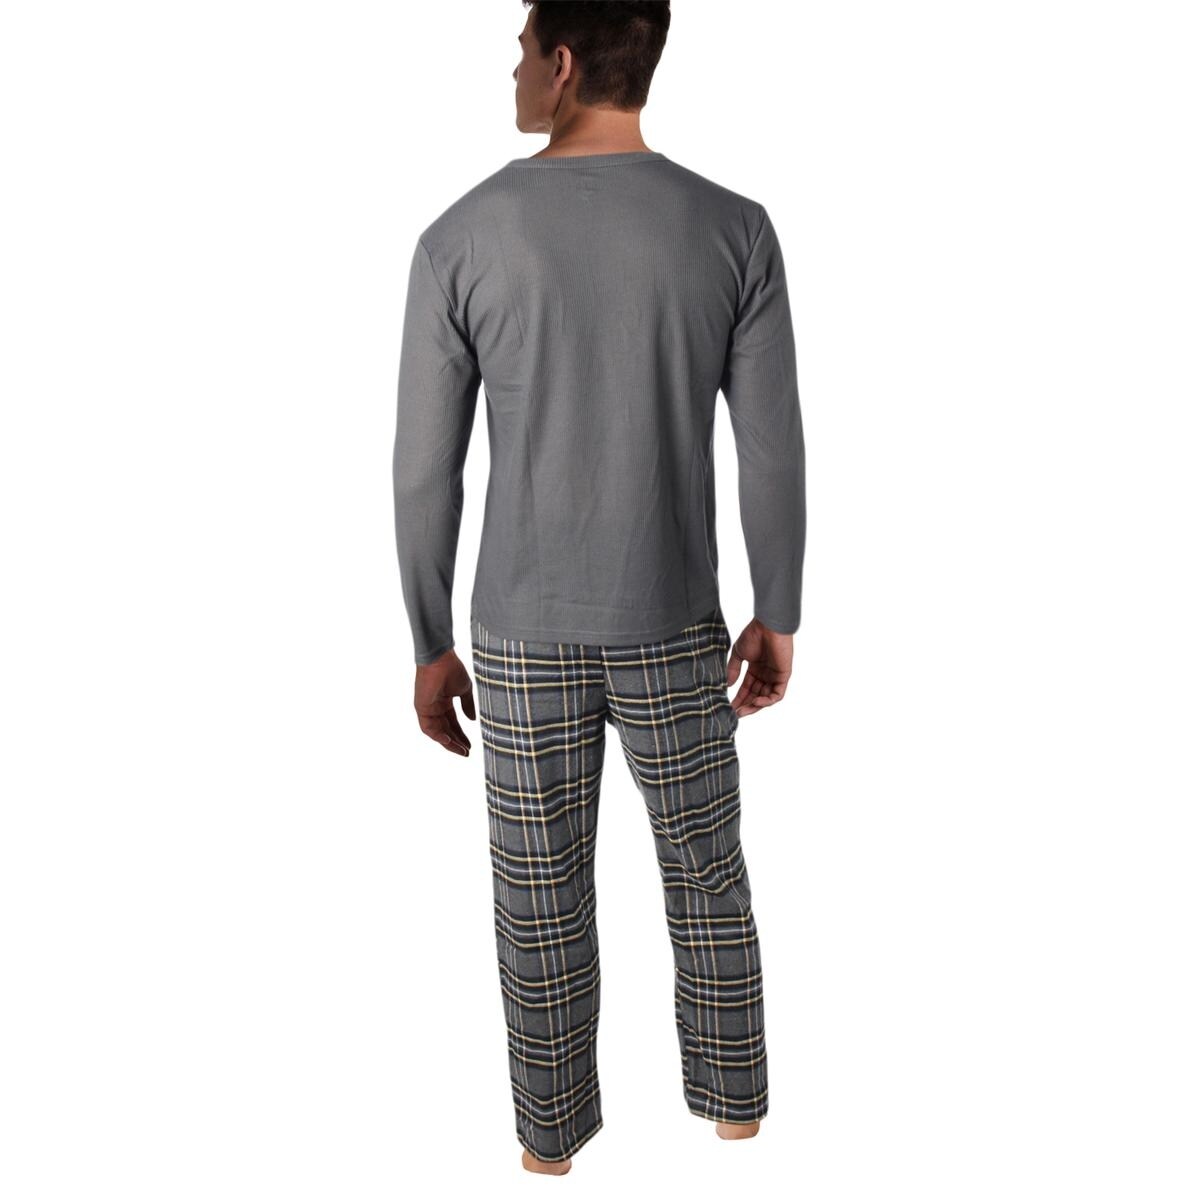 $60 Club Room Mens Pajamas Pjs Fleece Lounge Pants Blue Solid Sleepwear S